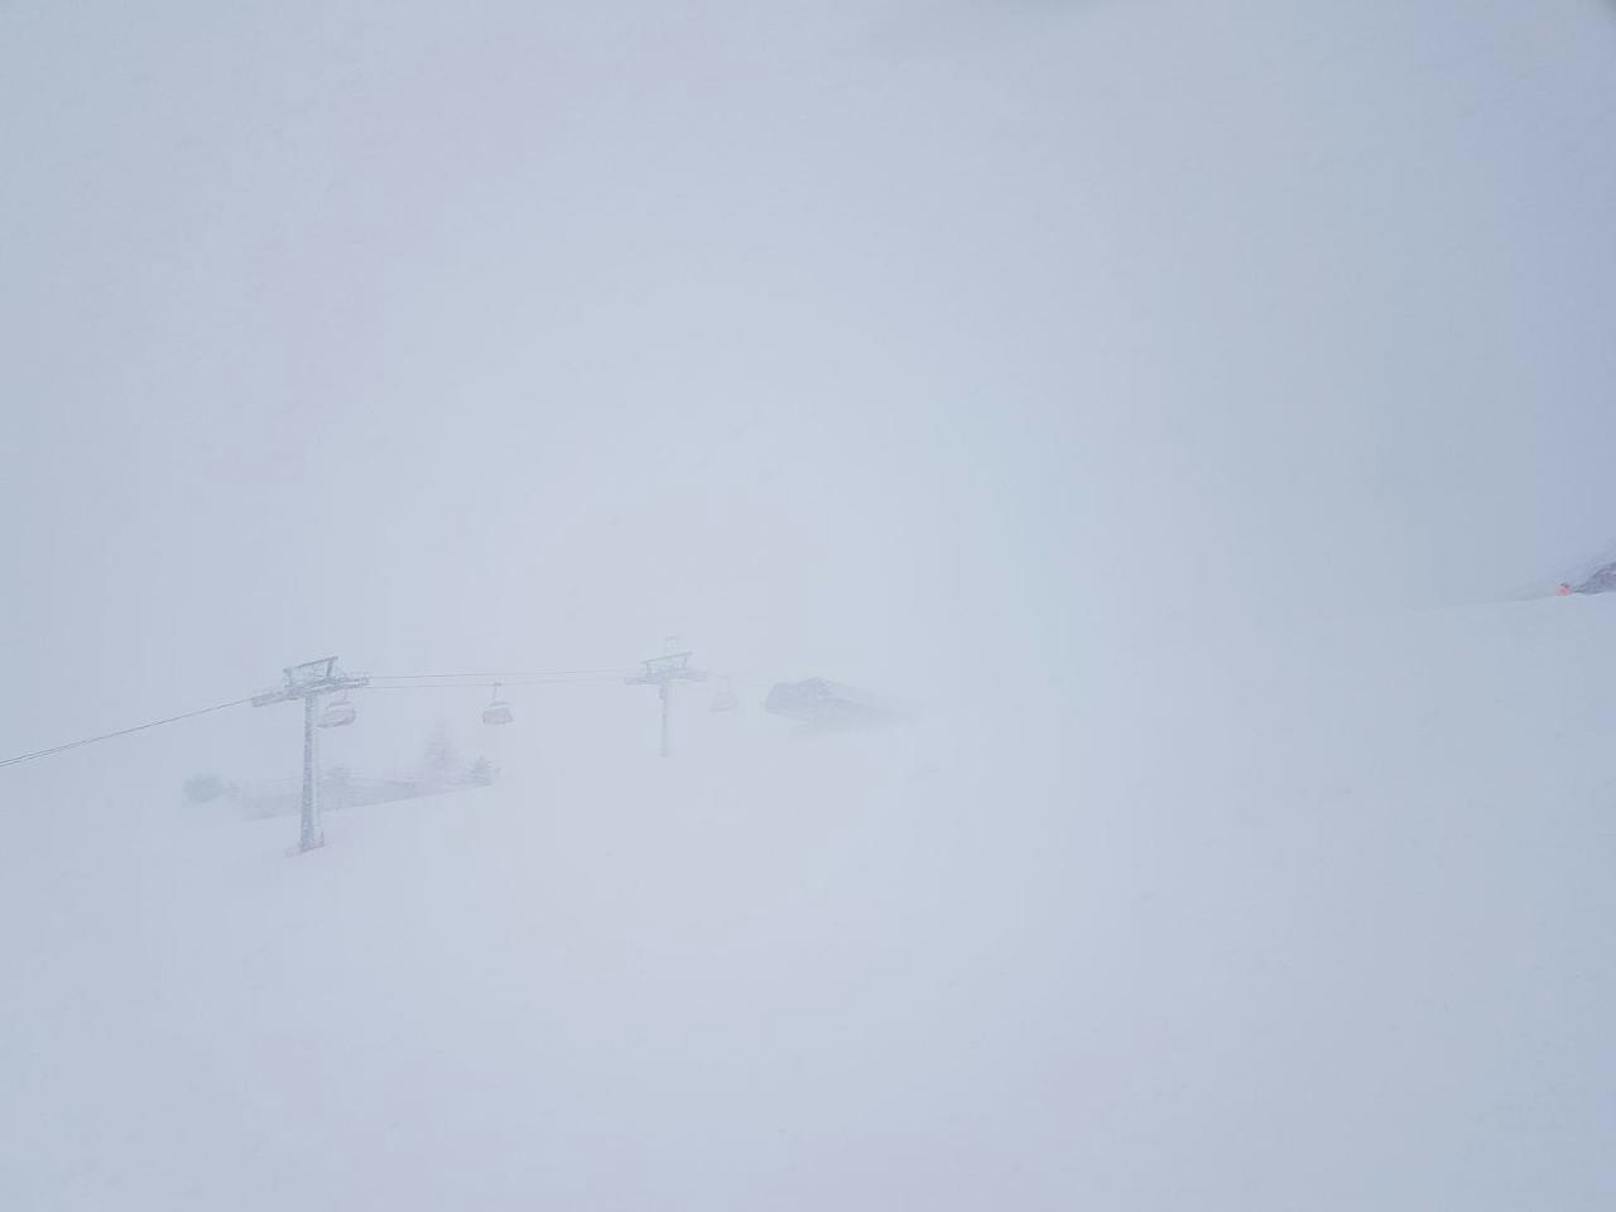 "Alle Lifte in Scheffau geschlossen. Zuerst schönes Wetter danach Nebel, Wind, Schnee und sogar ein Blitz gesichtet."